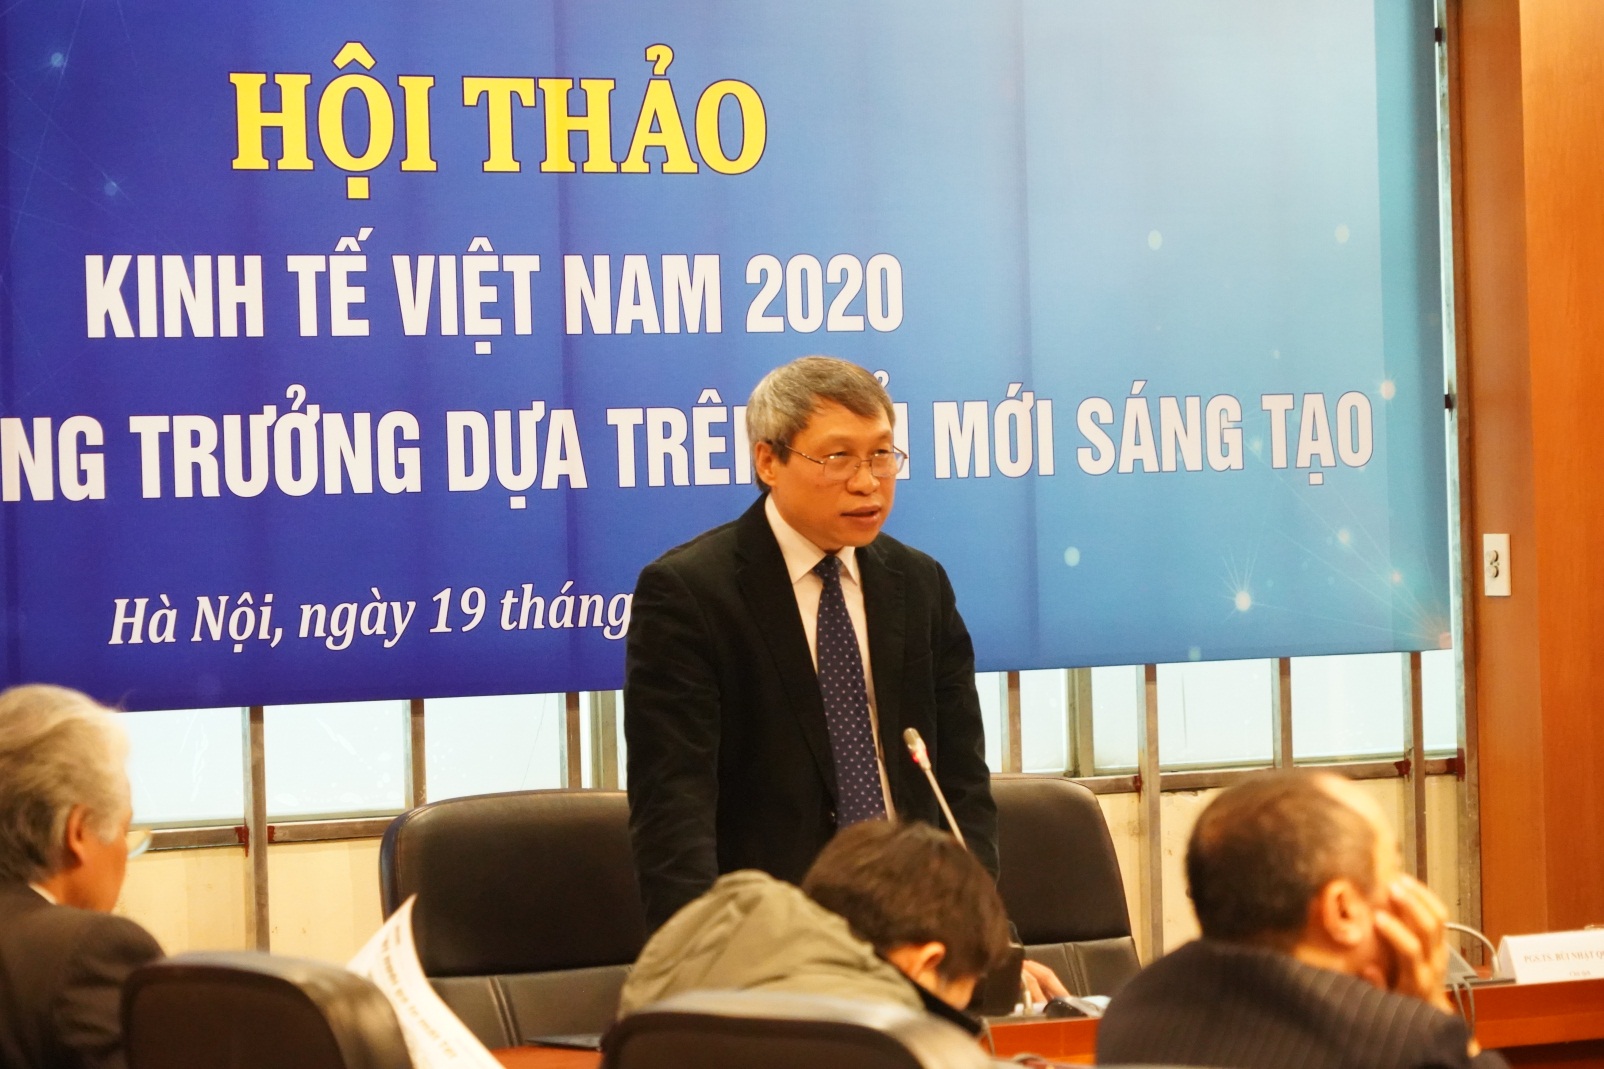 Assoc.Prof.Dr. Bui Quang Tuan, Director of the Vietnam Economic Institute, spoke at the seminar